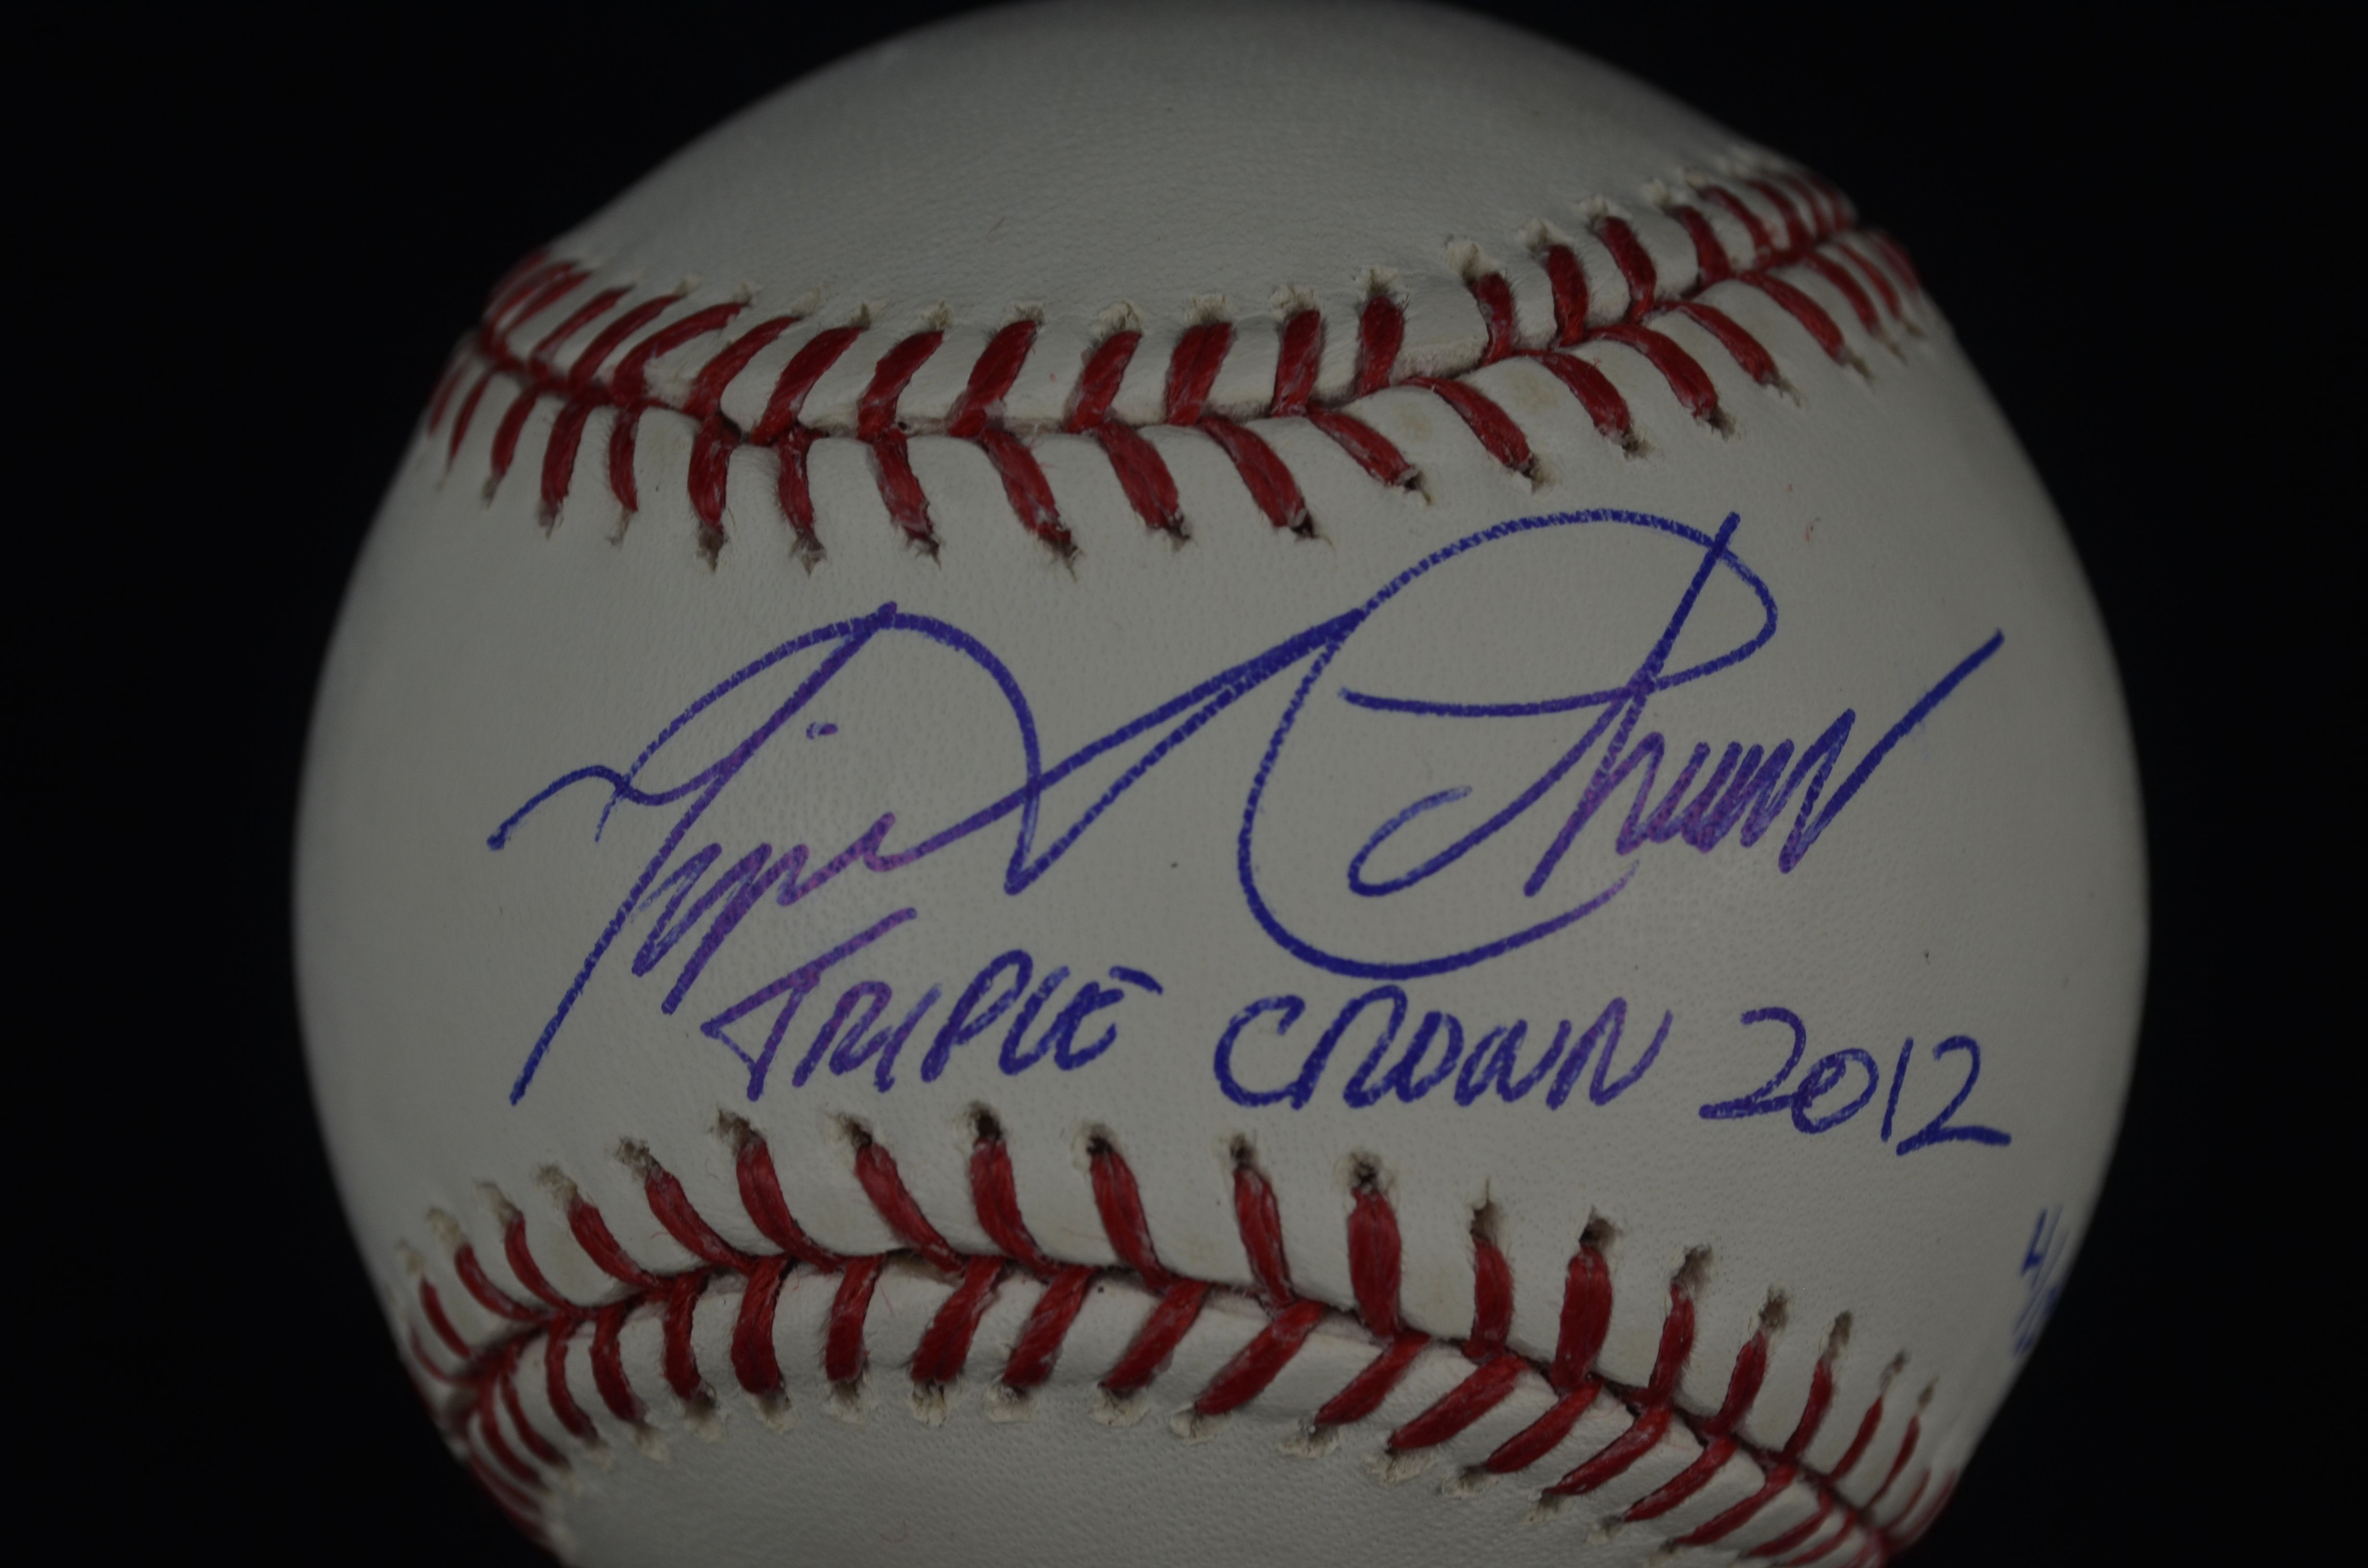 Miguel Cabrera Autographed Baseball - Triple Crown 2012